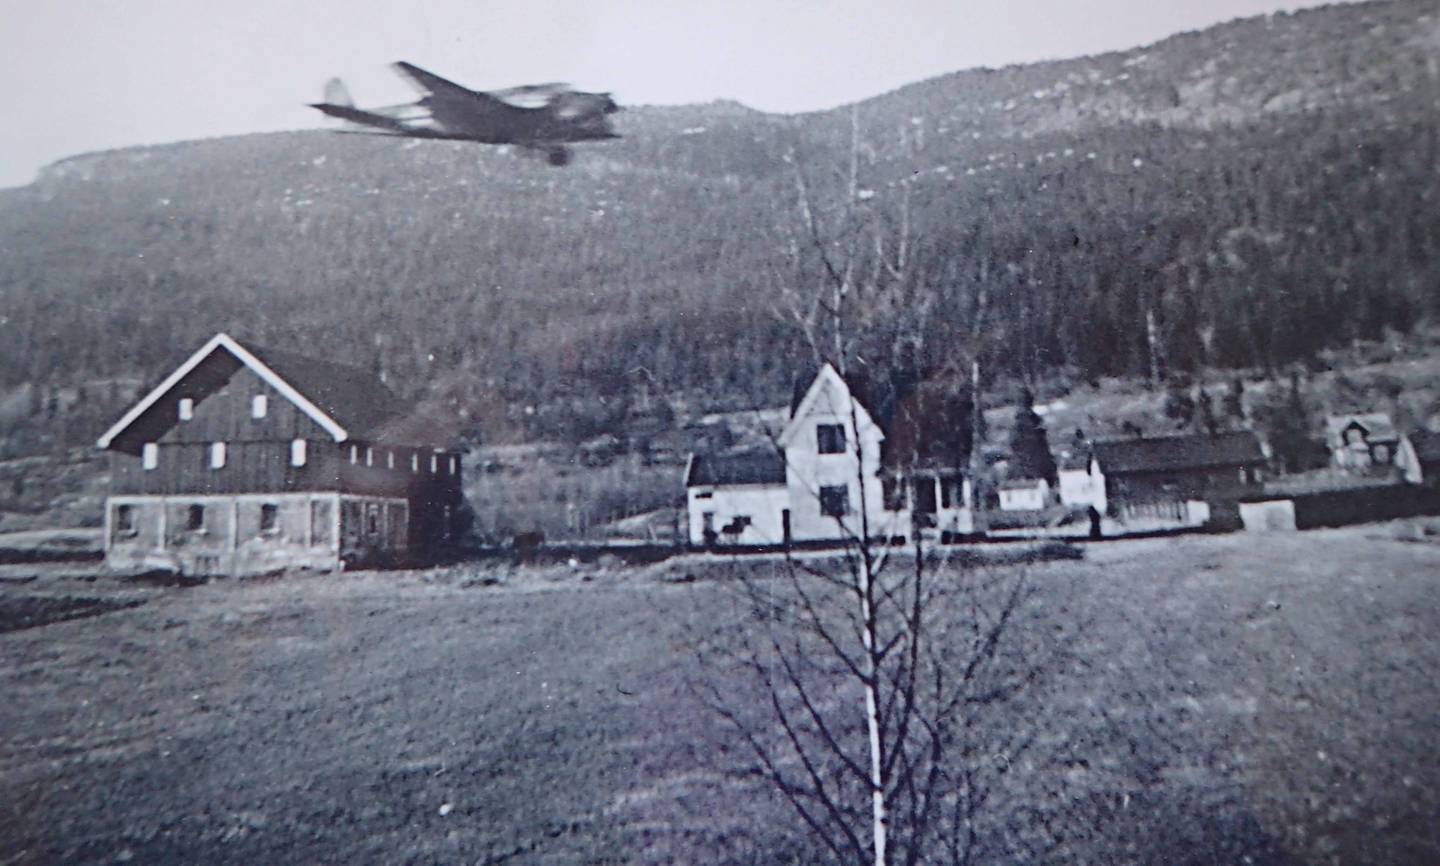 Krigen kom til Åssiden da dette tyske flyet passerte over Kvanlidgården 9. april 1940. Utlånt fra Tor Adler Knudsens fotosamling. 19.05.21.-149